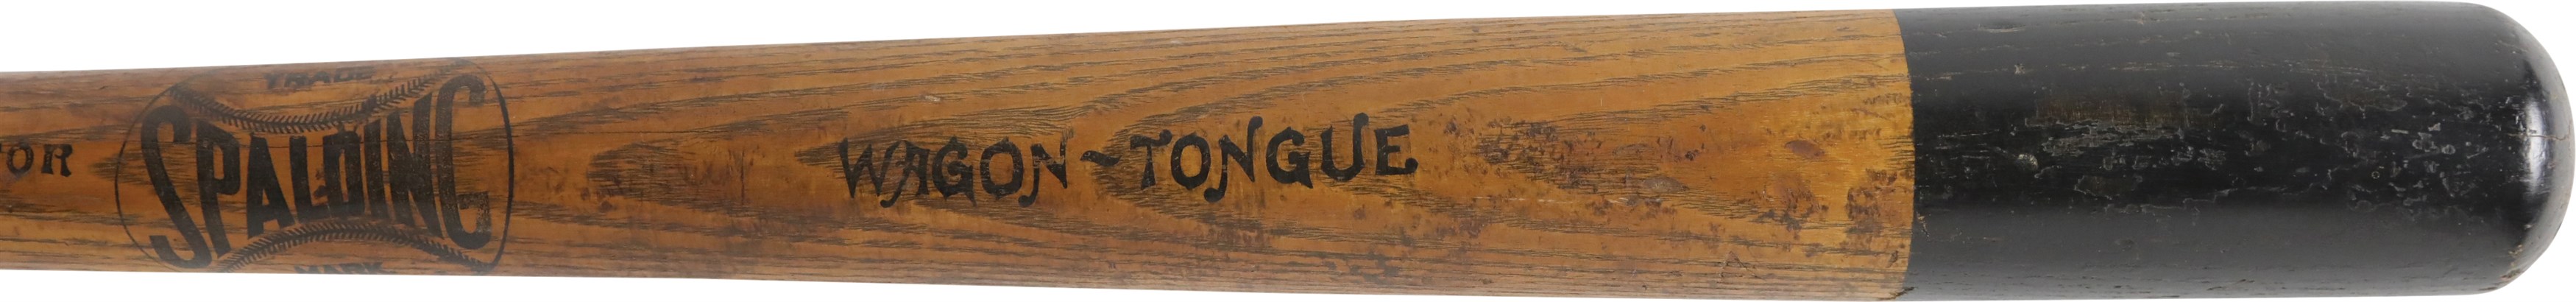 19th Century Spalding Wagon Tongue Stenciled Baseball Bat